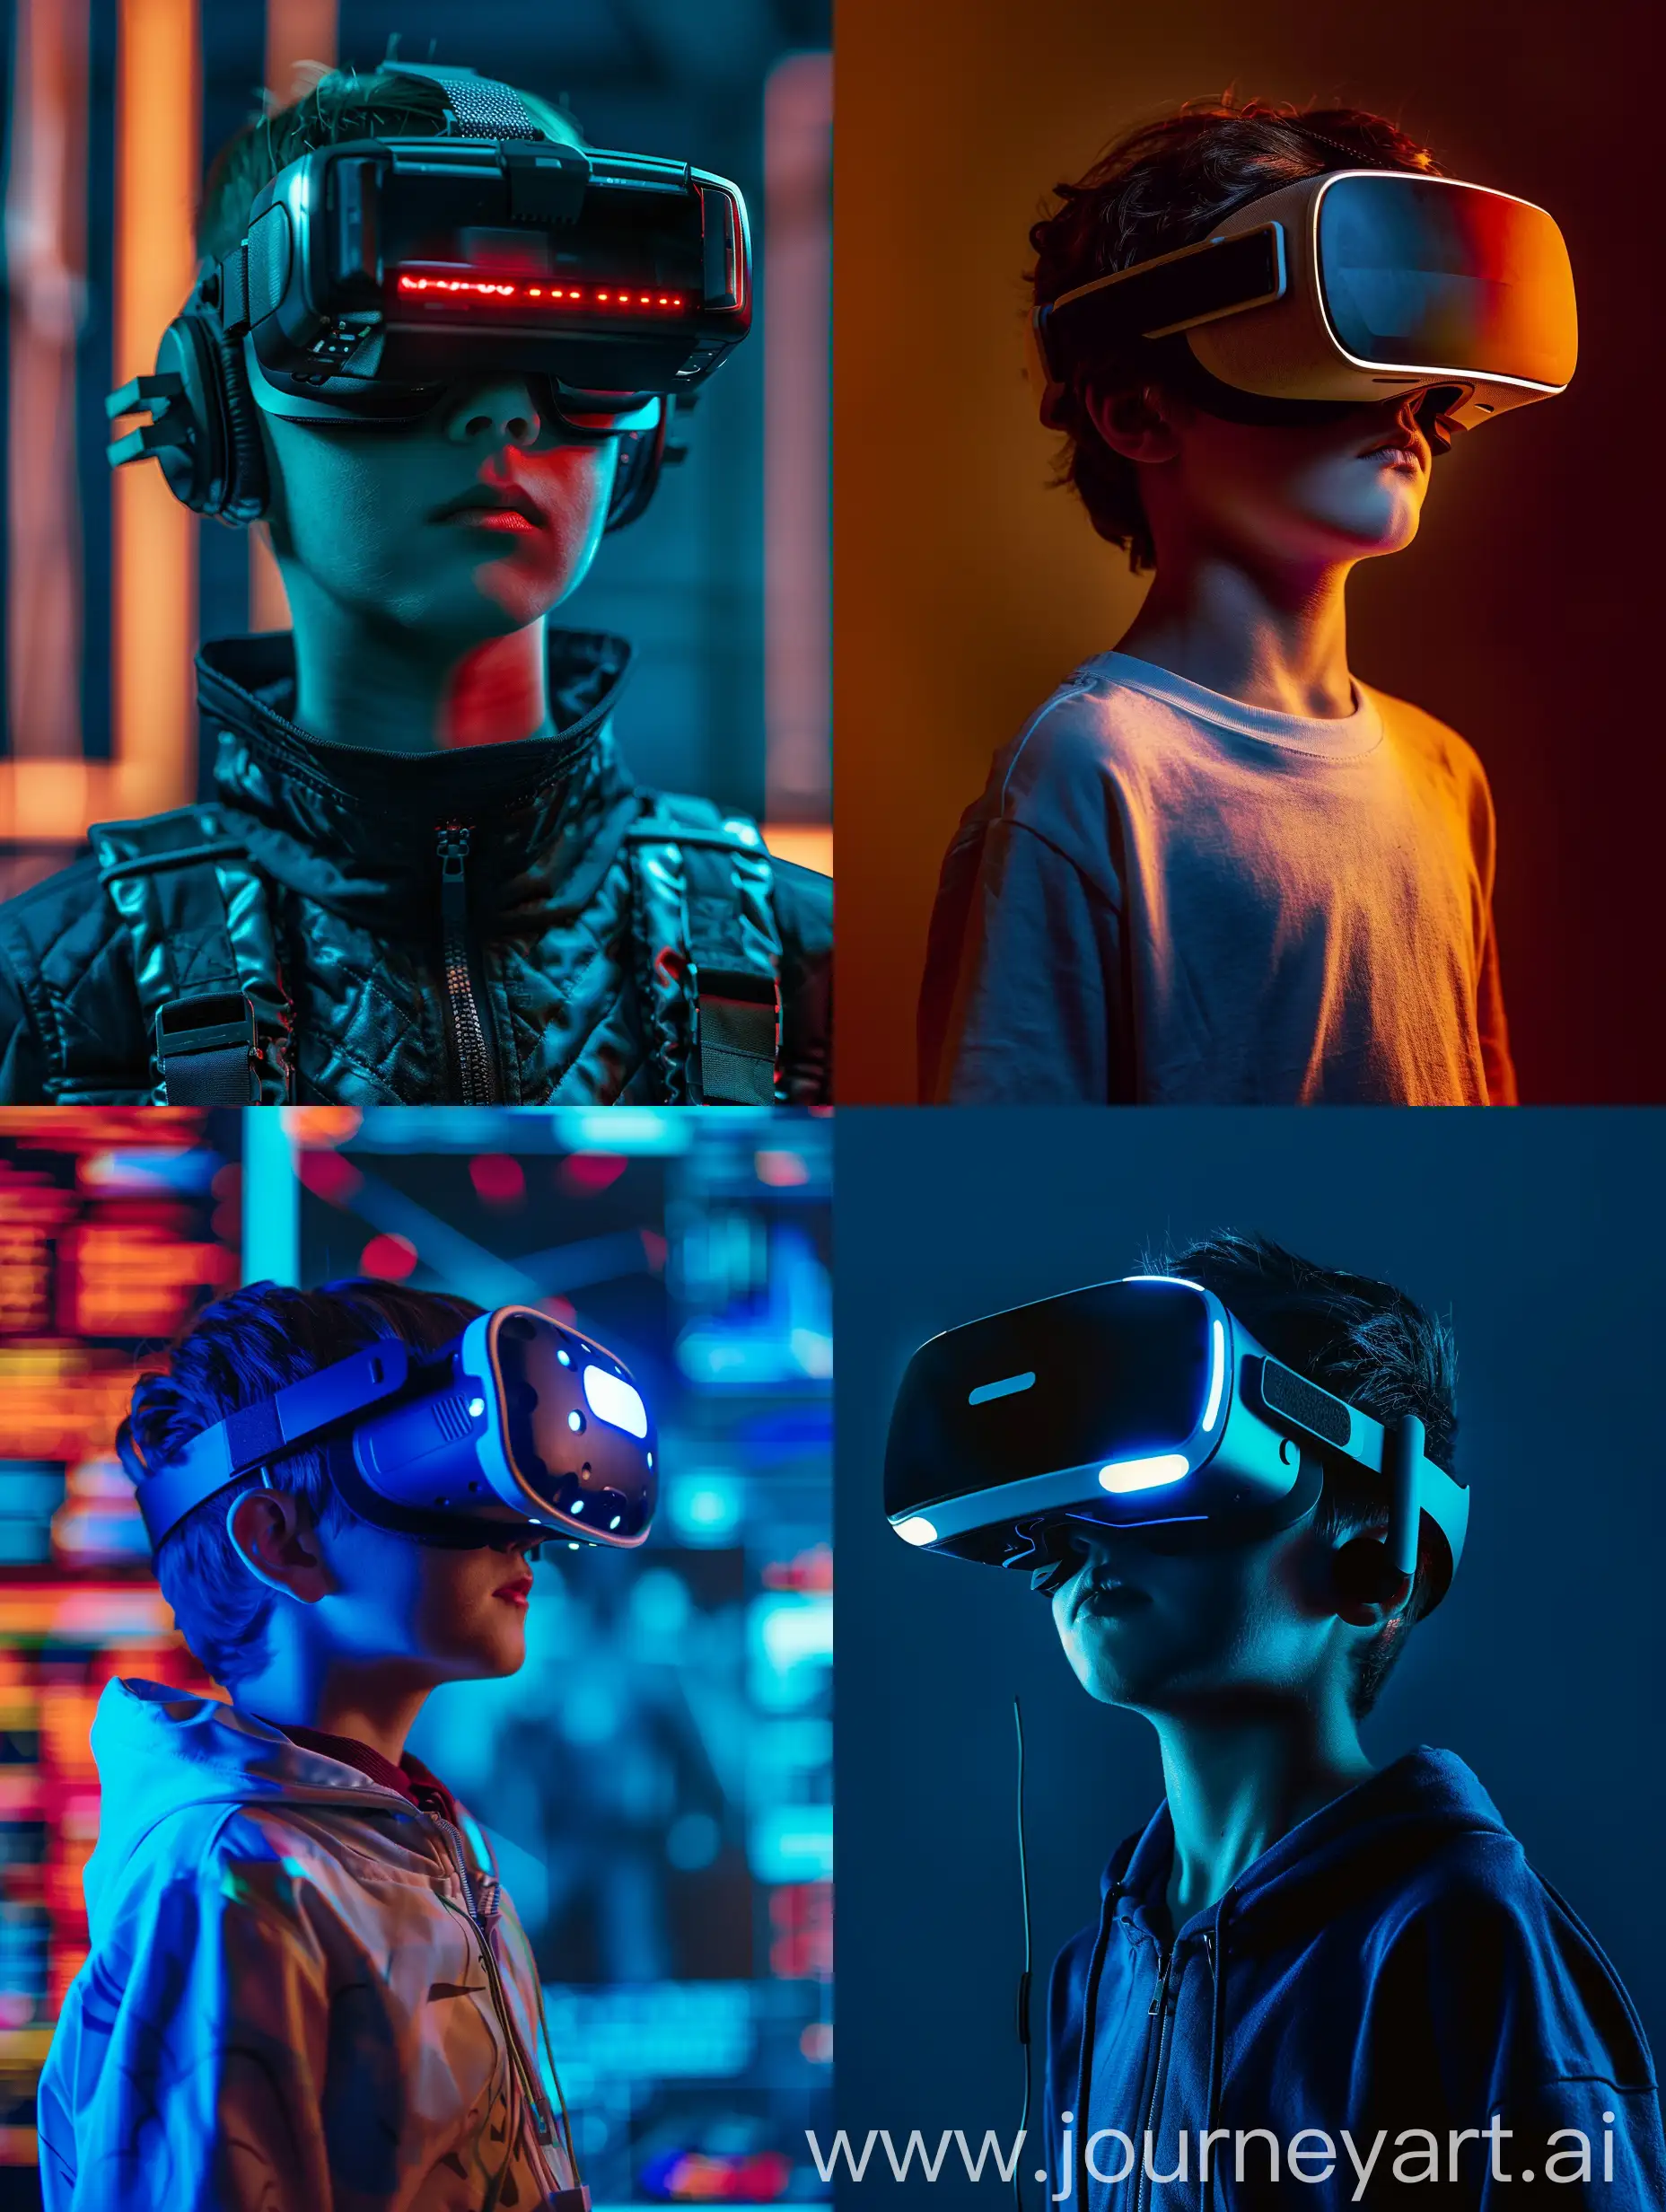 戴·VR眼镜的男孩、元宇宙、混合现实、躲避红外线场景、特工